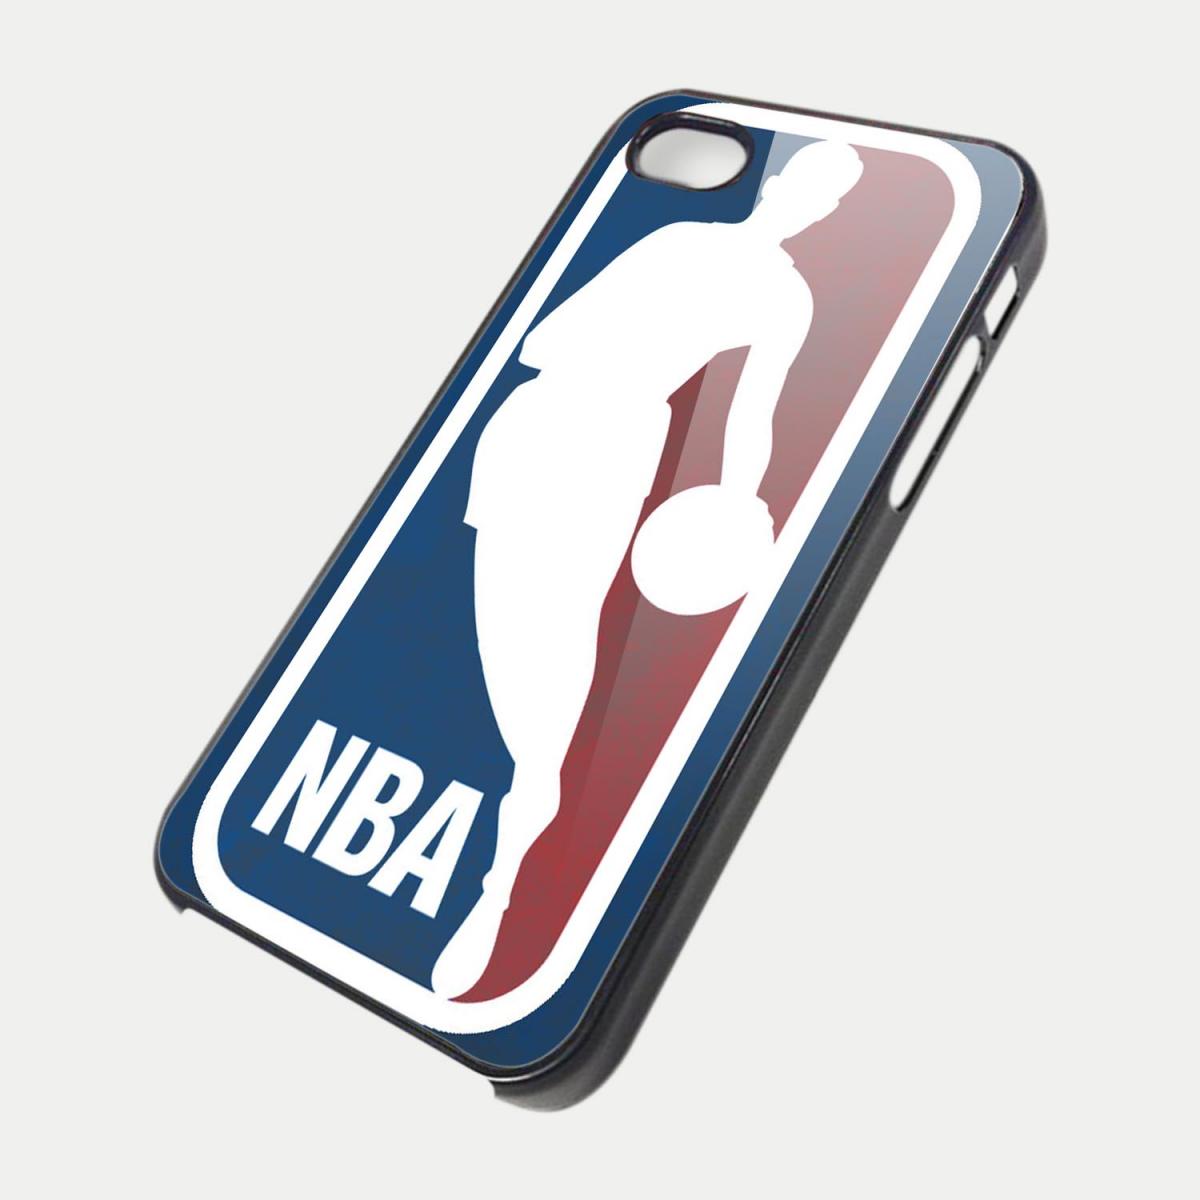 Nba Logo Special Design Iphone 4 Case Cover